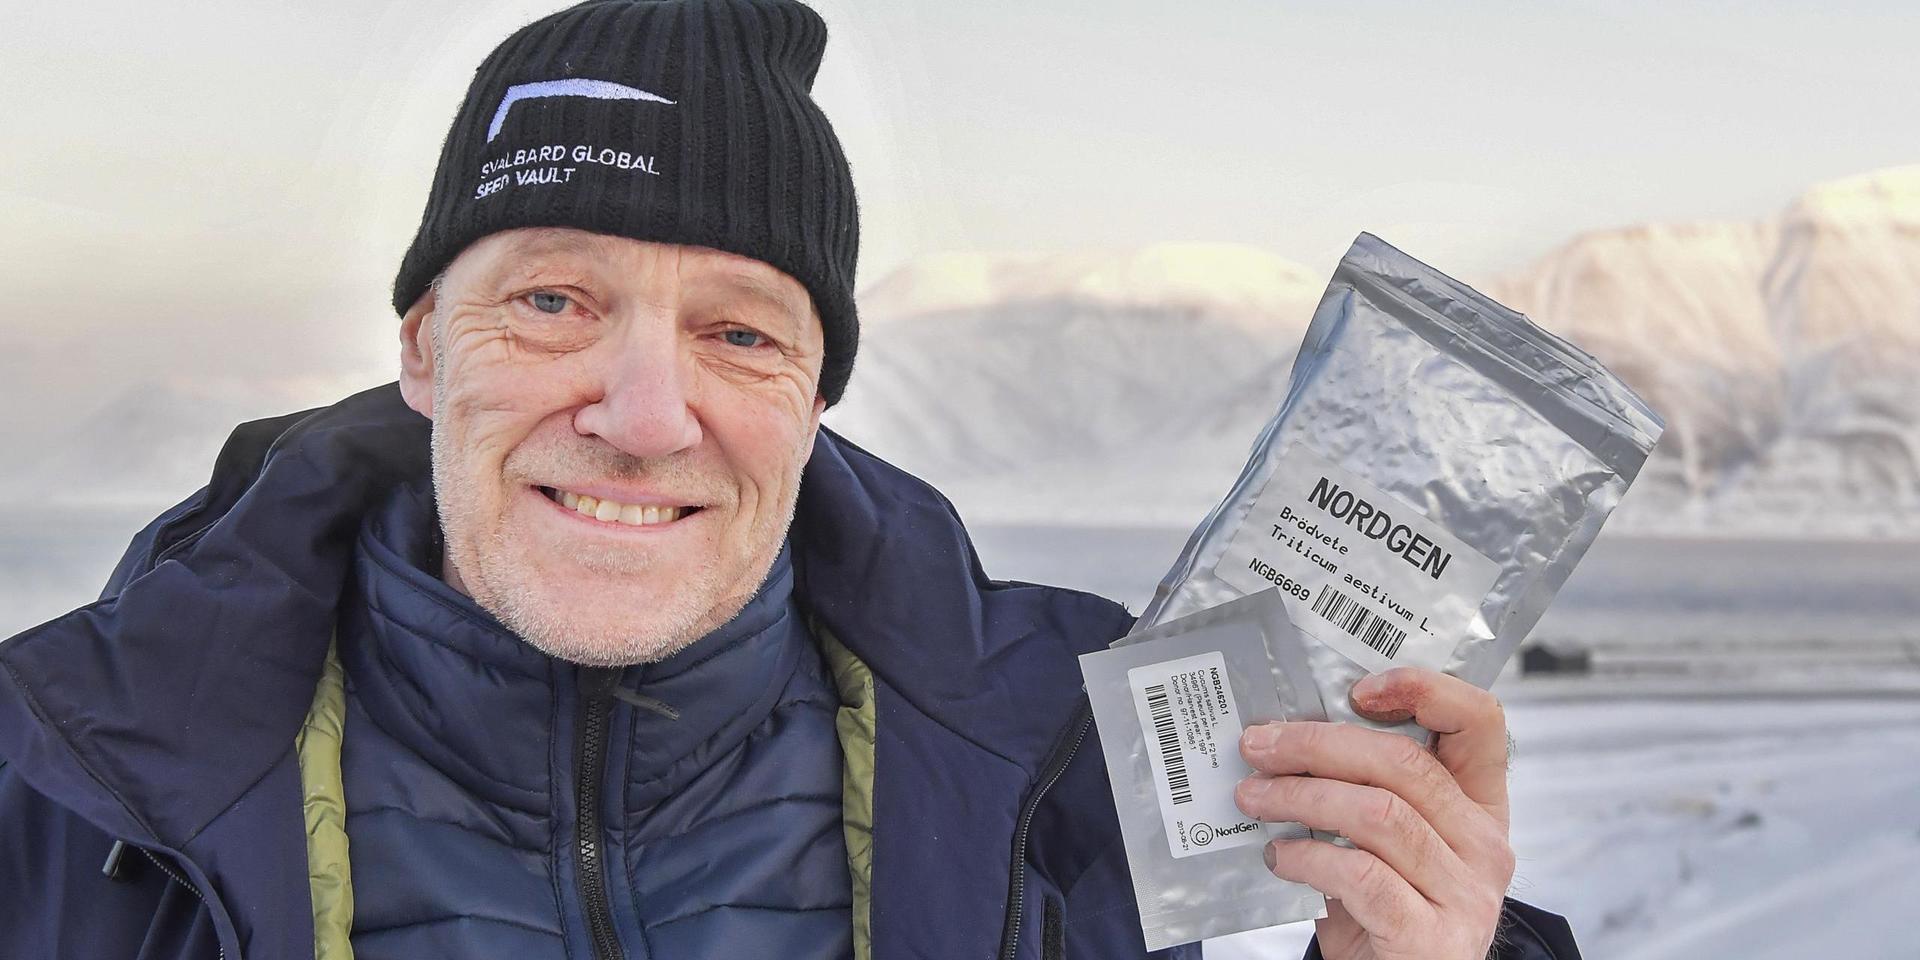 Åsmund Asdal är koordinator för det globala frövalvet på Svalbard.